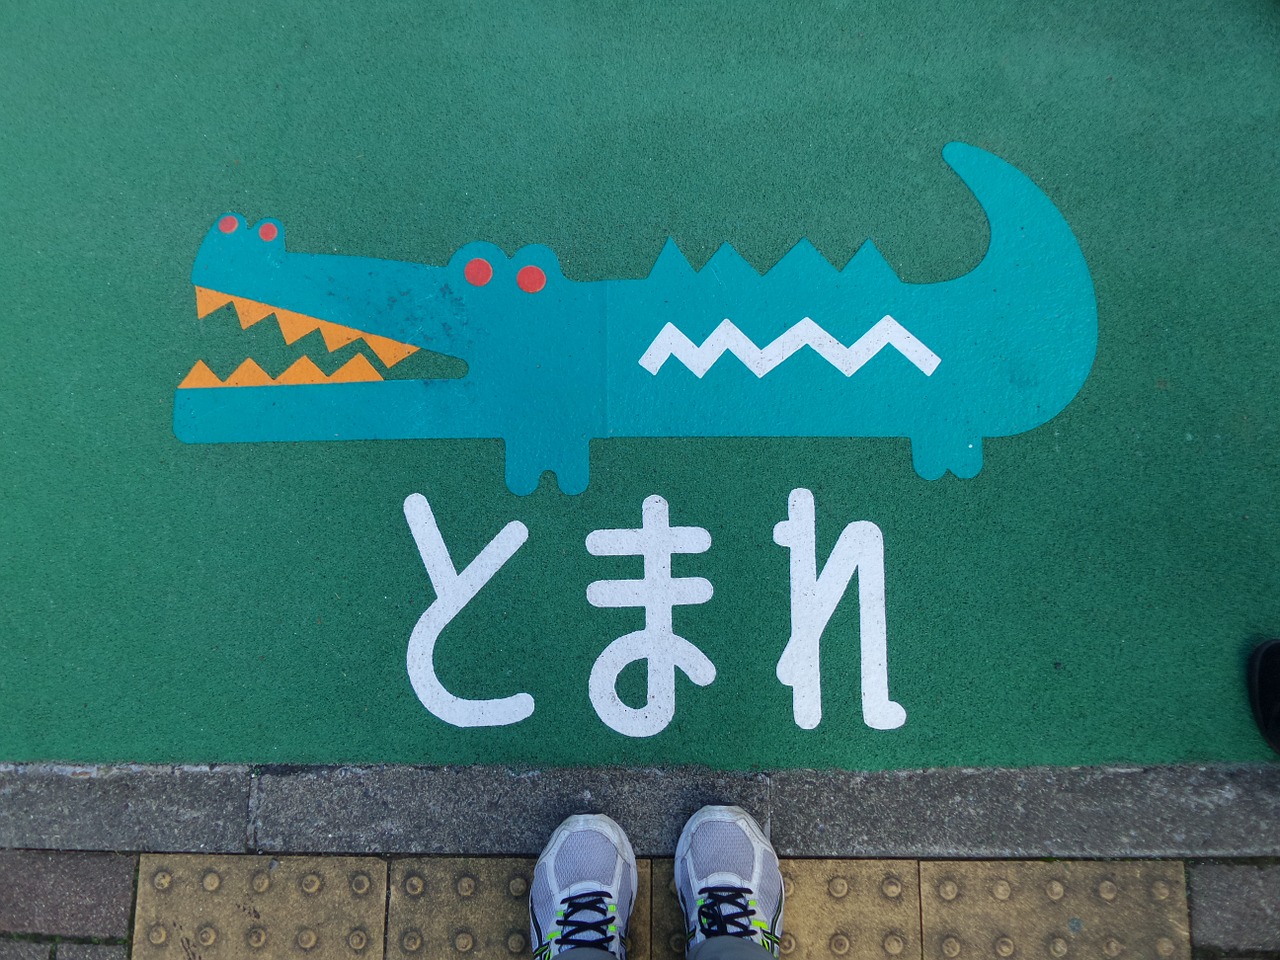 pavement crocodile drawing free photo